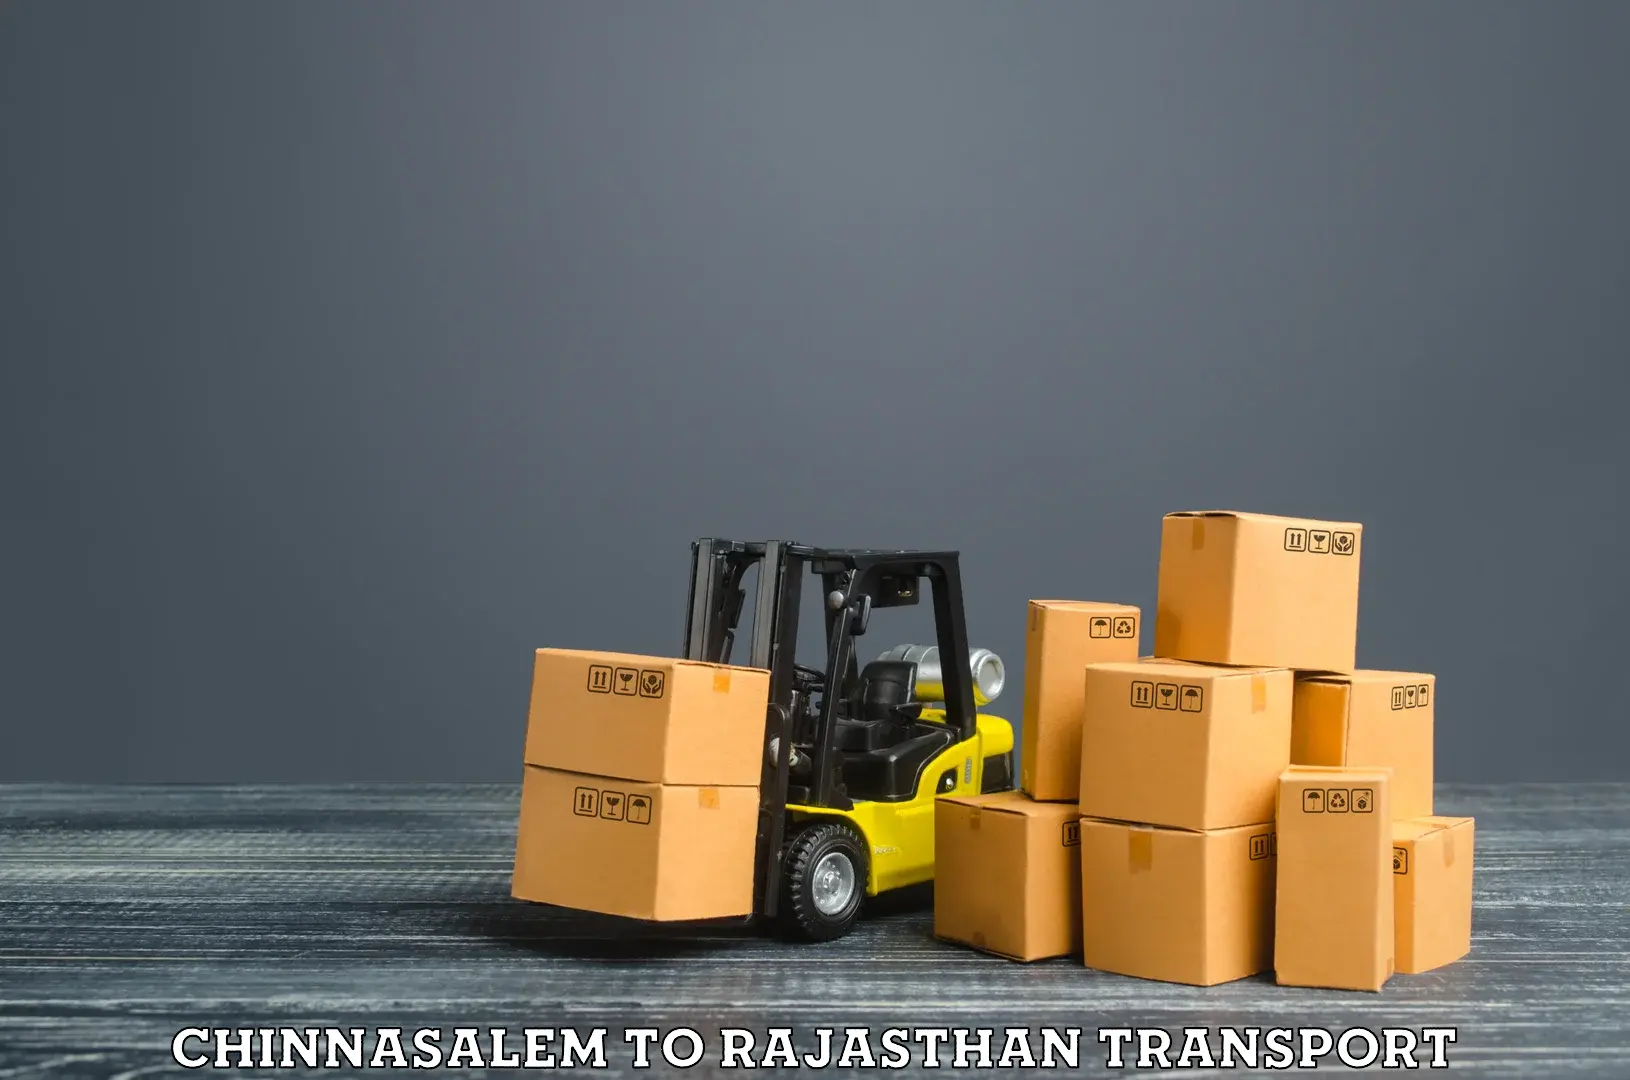 International cargo transportation services Chinnasalem to Balotra